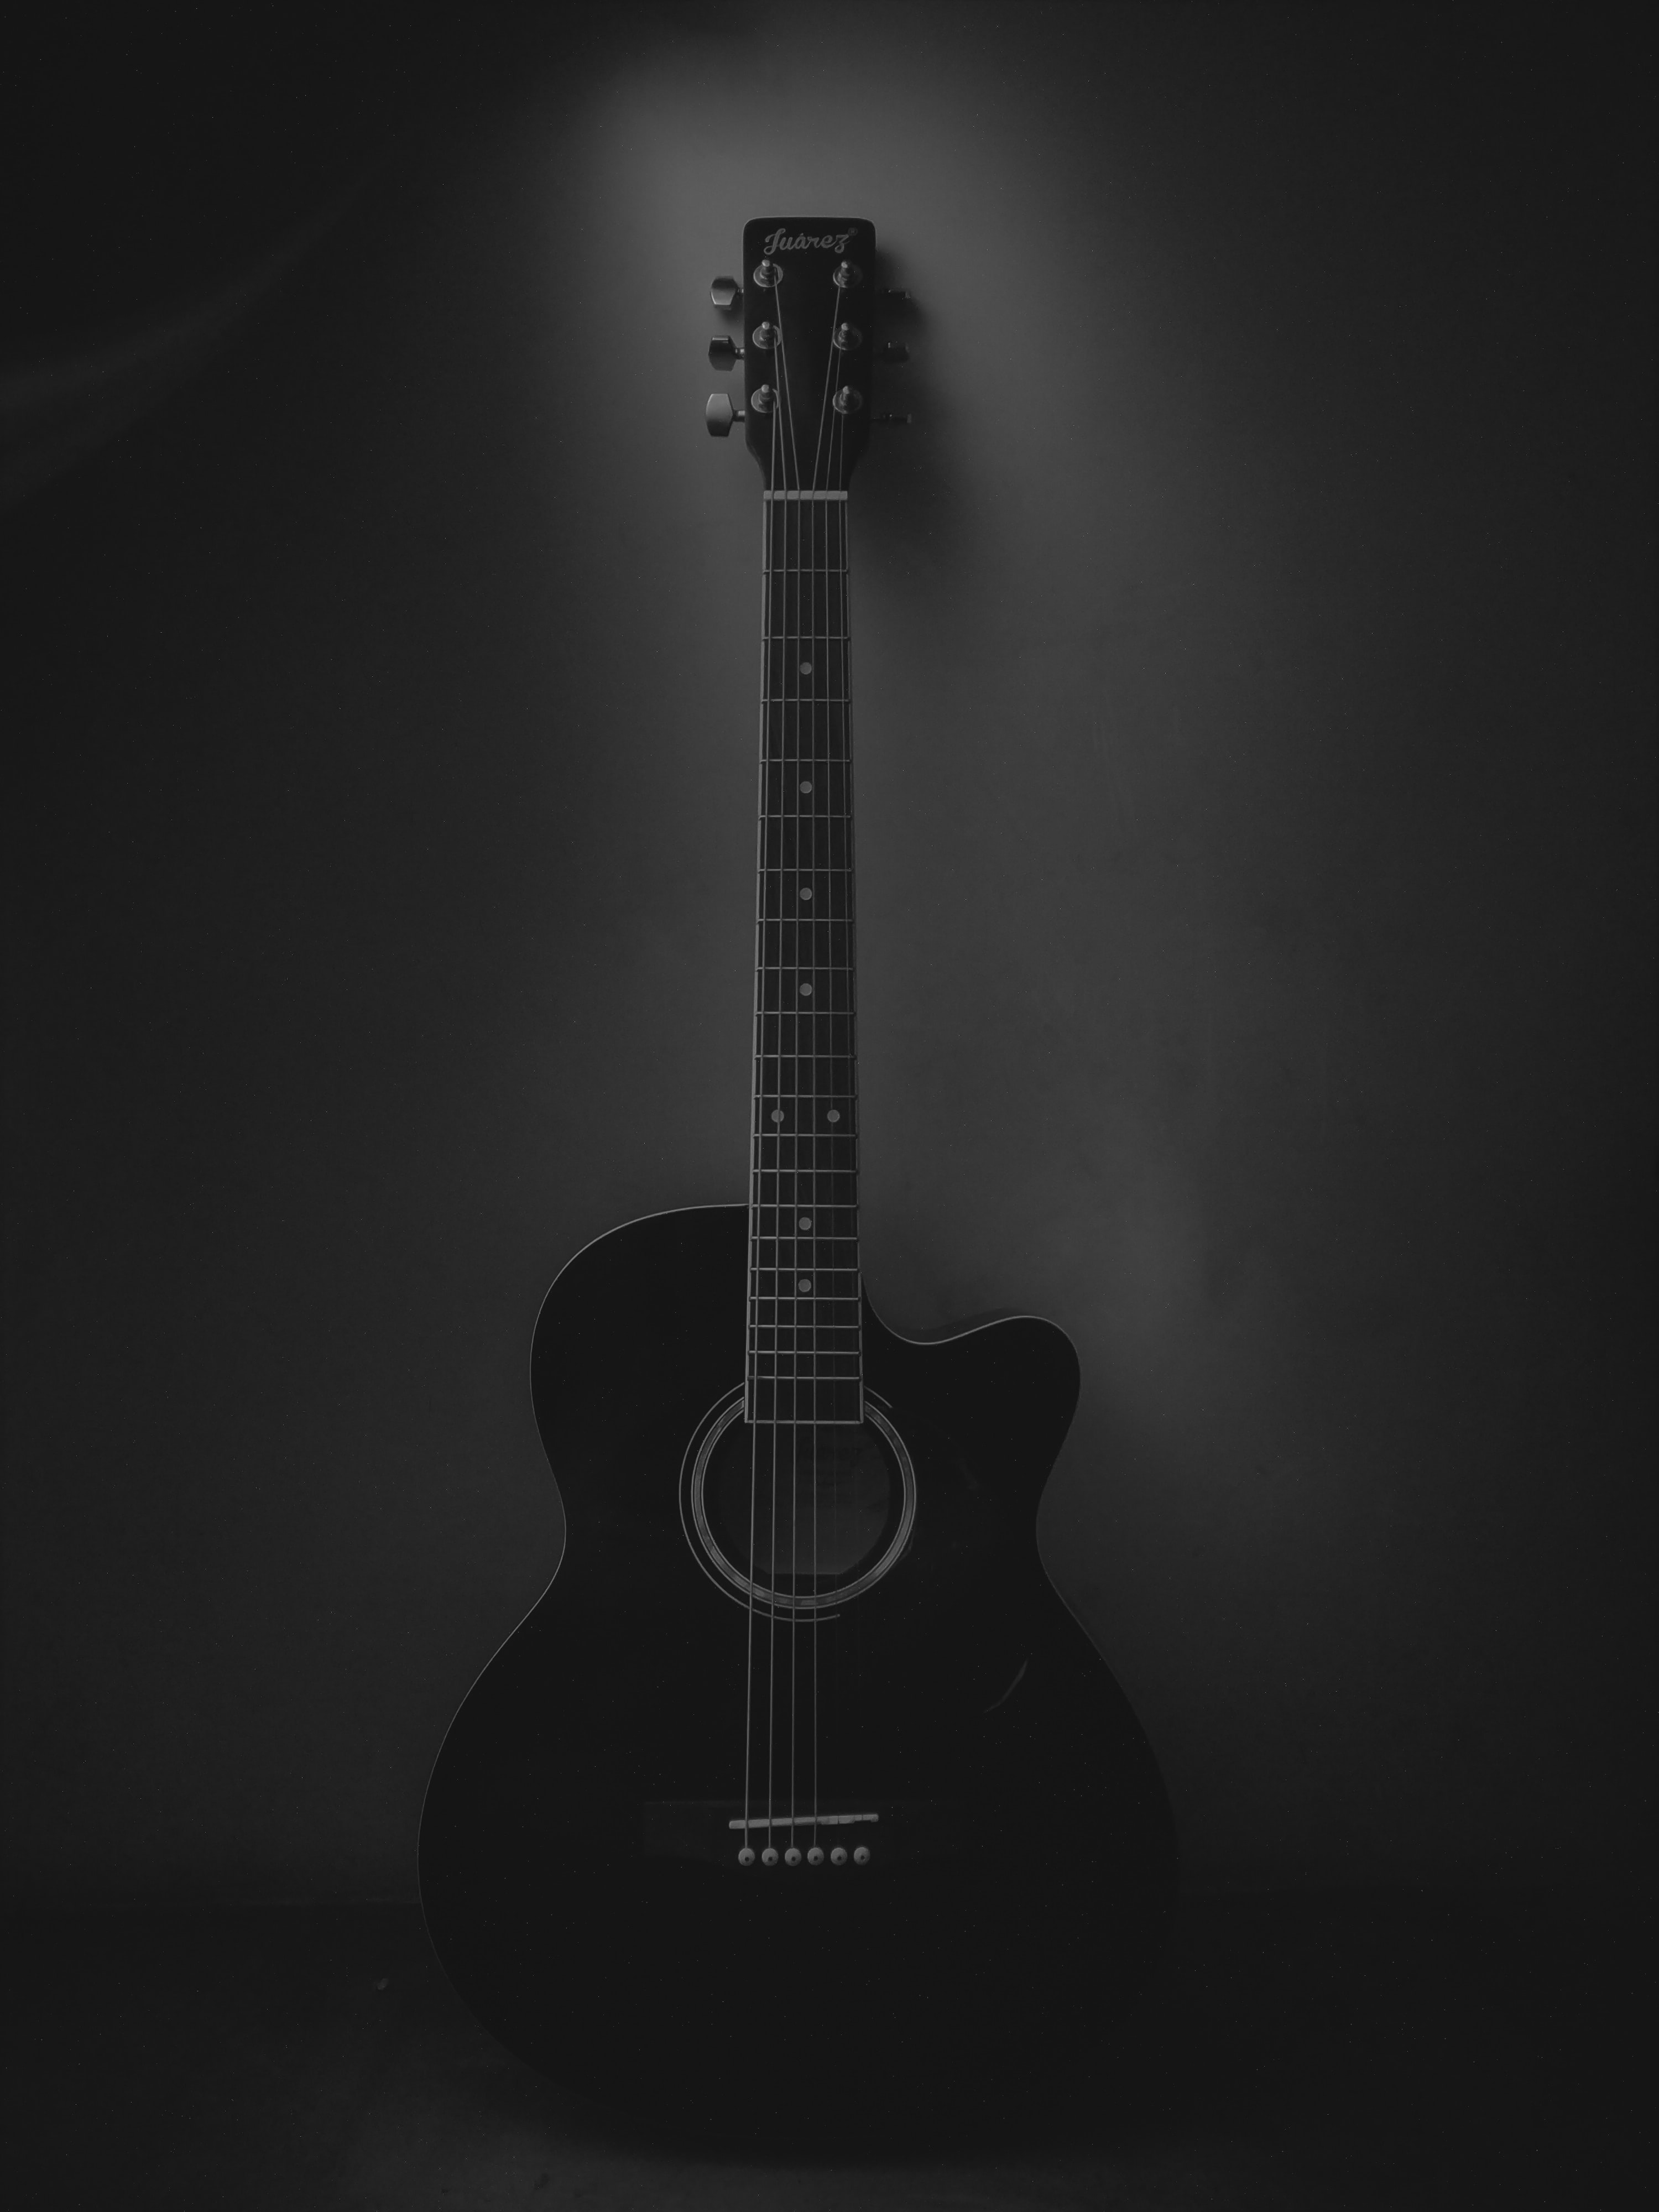 dark, guitar, black, music, musical instrument, acoustic guitar